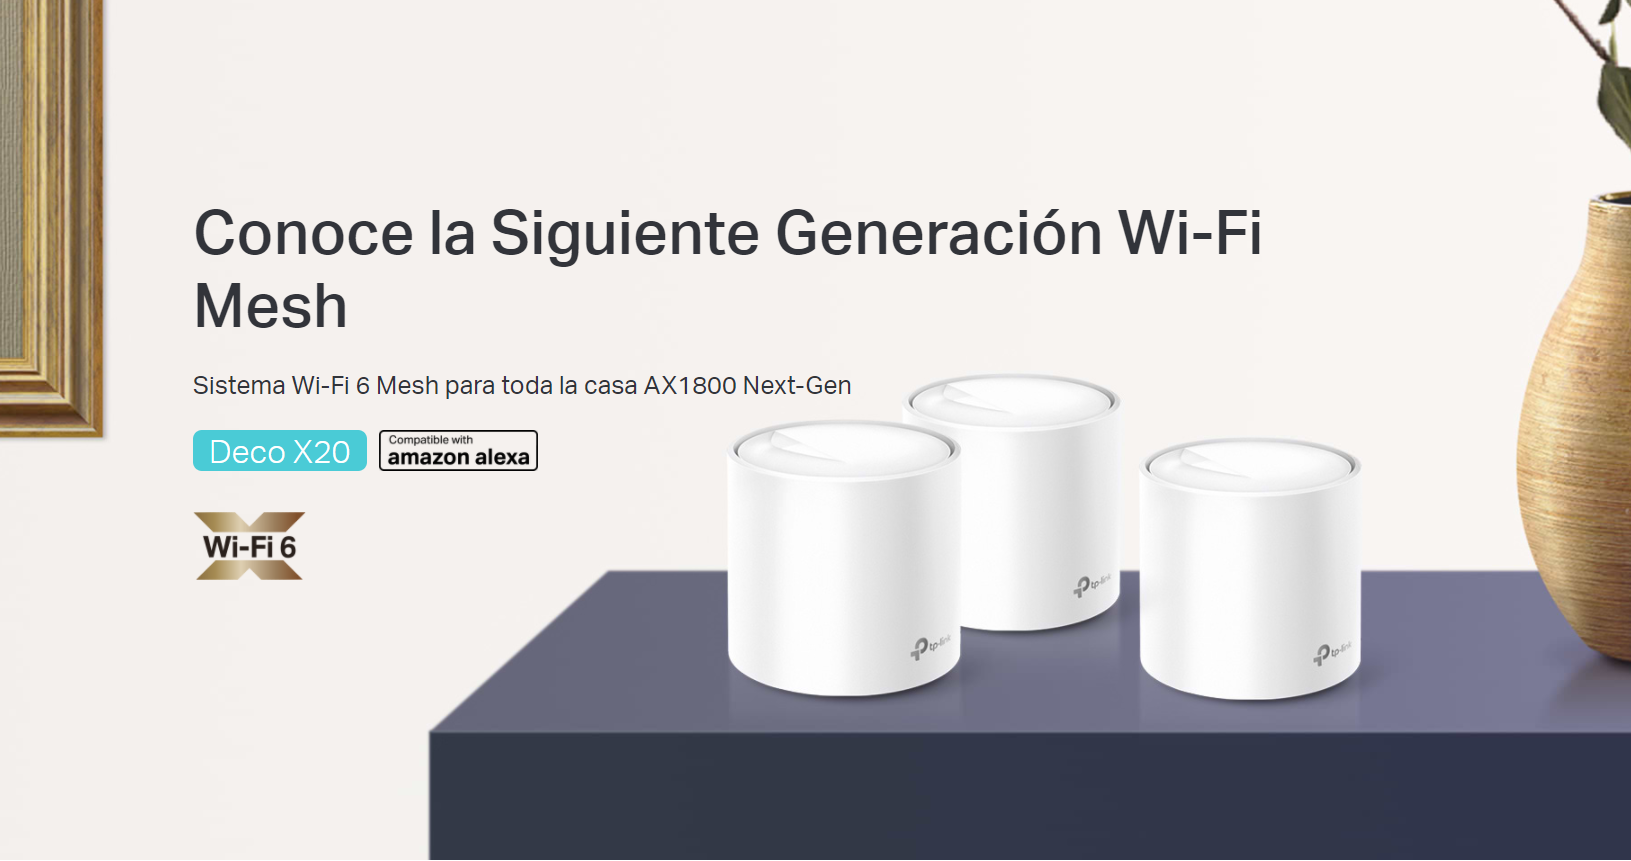 Deco X20: Conoce la siguiente generación Wi-Fi Mesh